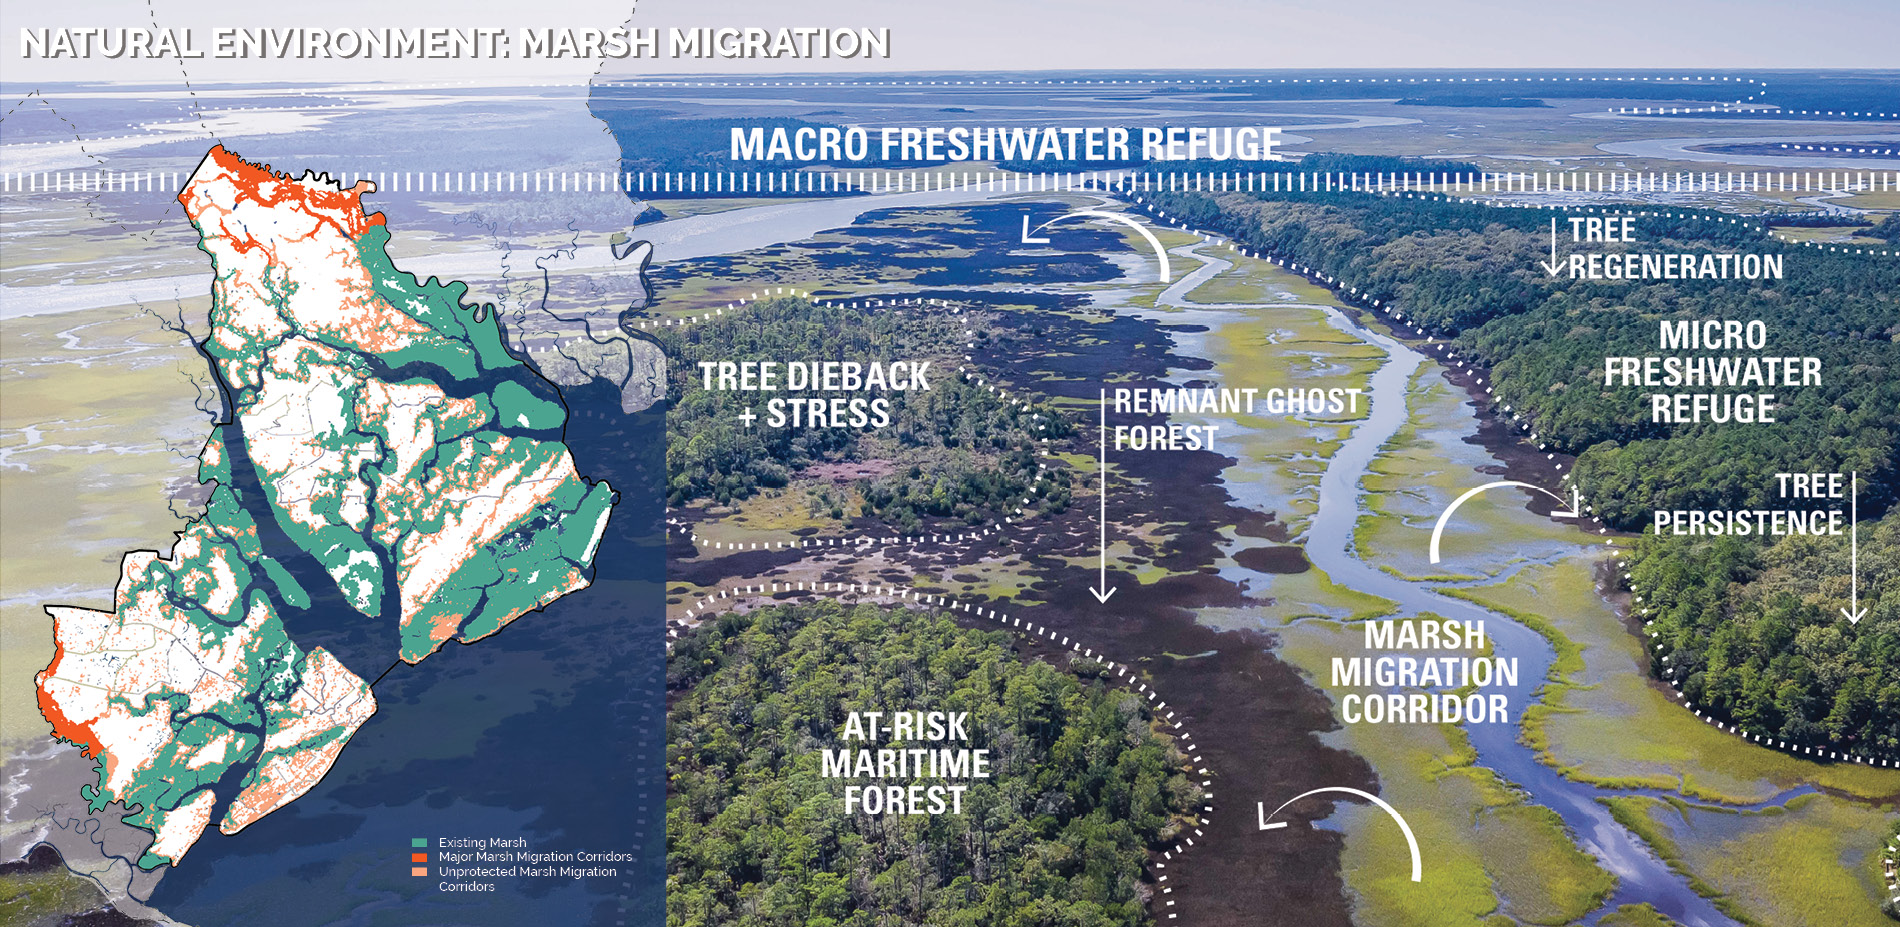 Natural Environment: Marsh Migration